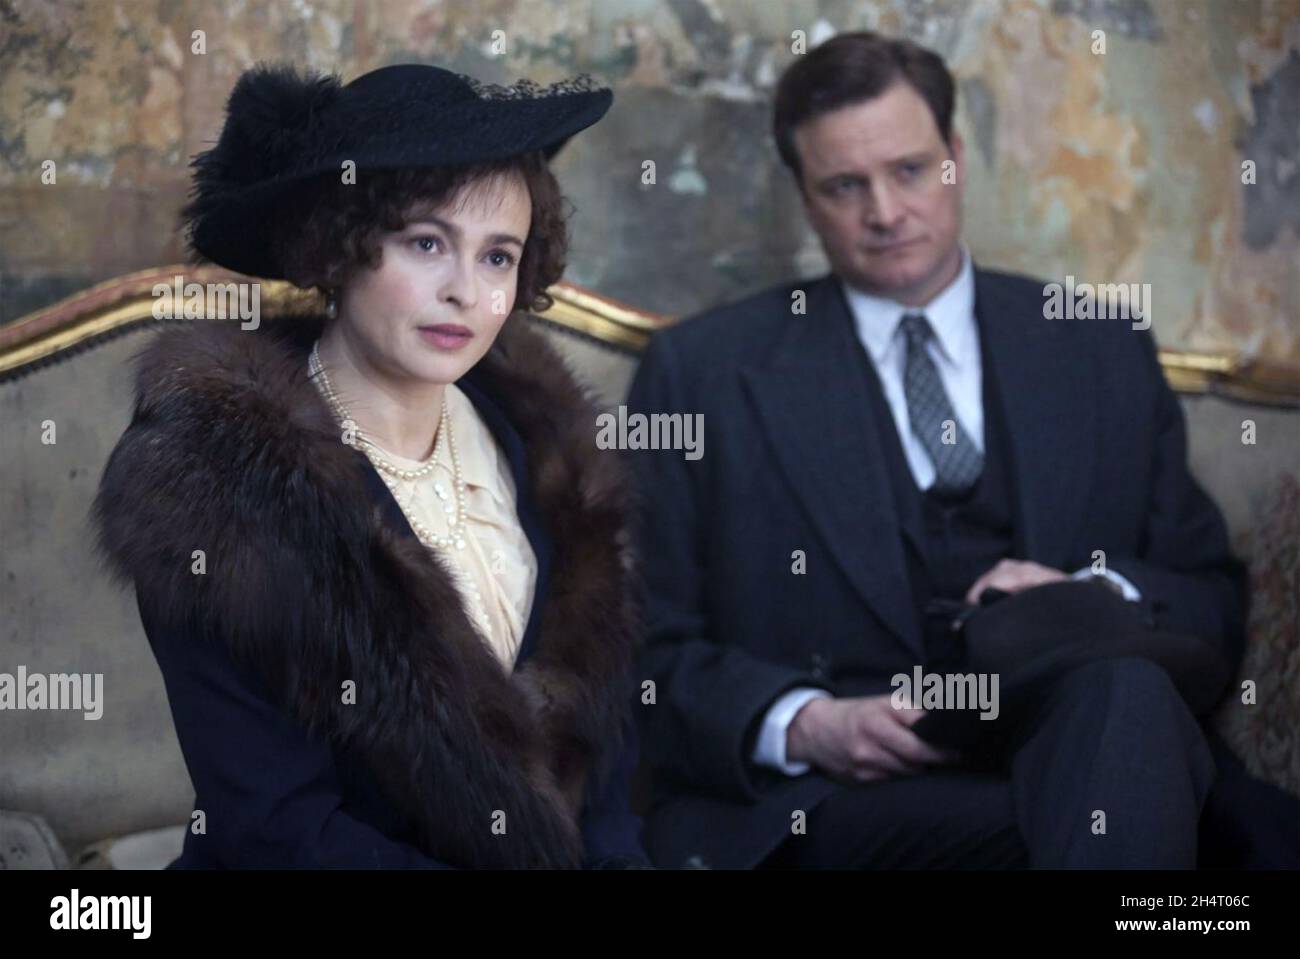 LE DISCOURS du ROI 2010 Momentum Pictures film avec Colin Firth comme le futur roi George VI et Helena Bonham carter comme duchesse de York Banque D'Images